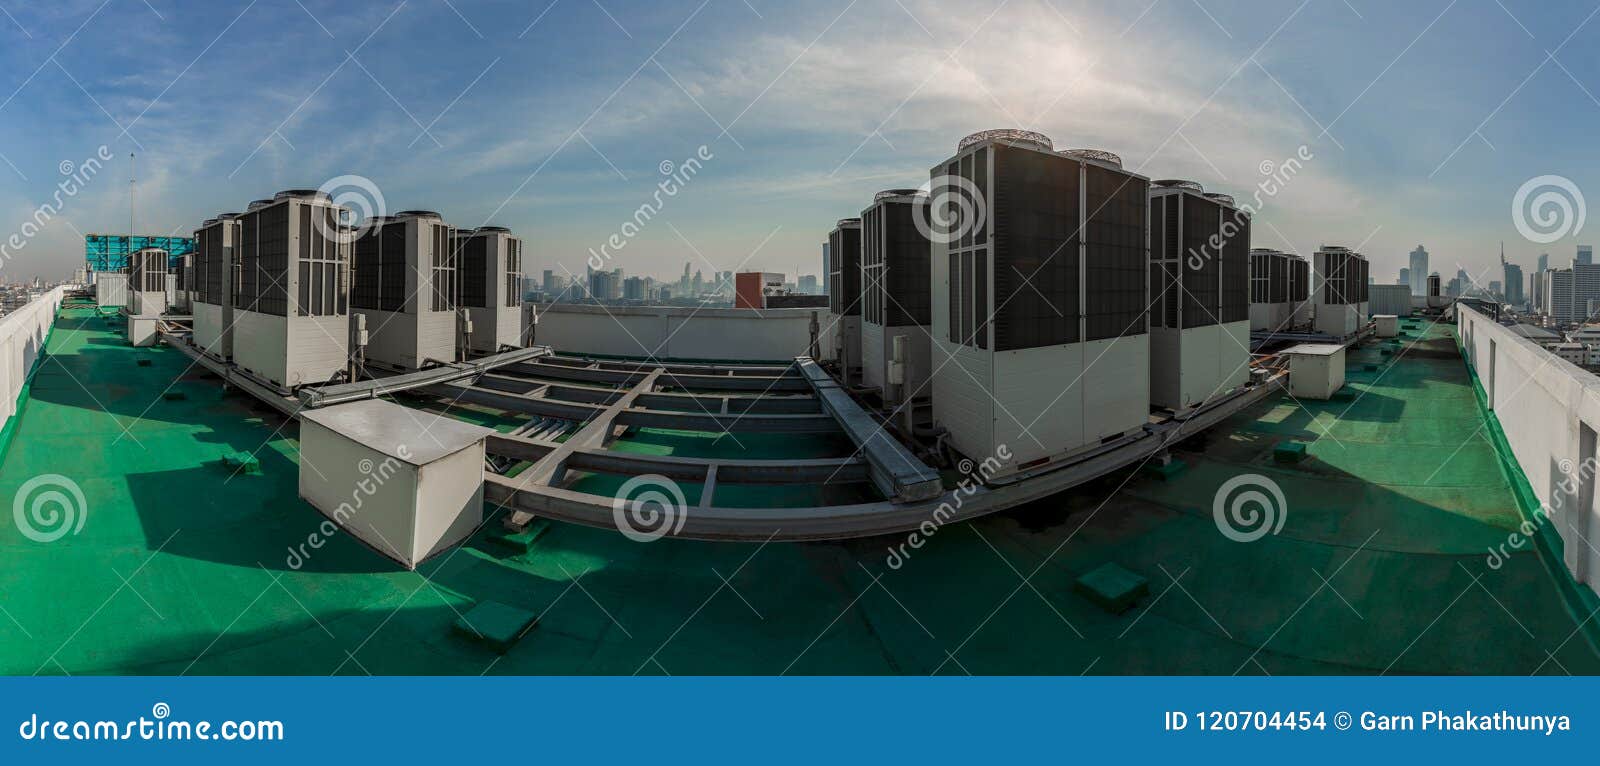 用尽工业空调和透气出气孔单. 空调尾气行业屋顶超级市场顶层部件透气放气 摩天大楼从高大厦的屋顶上面